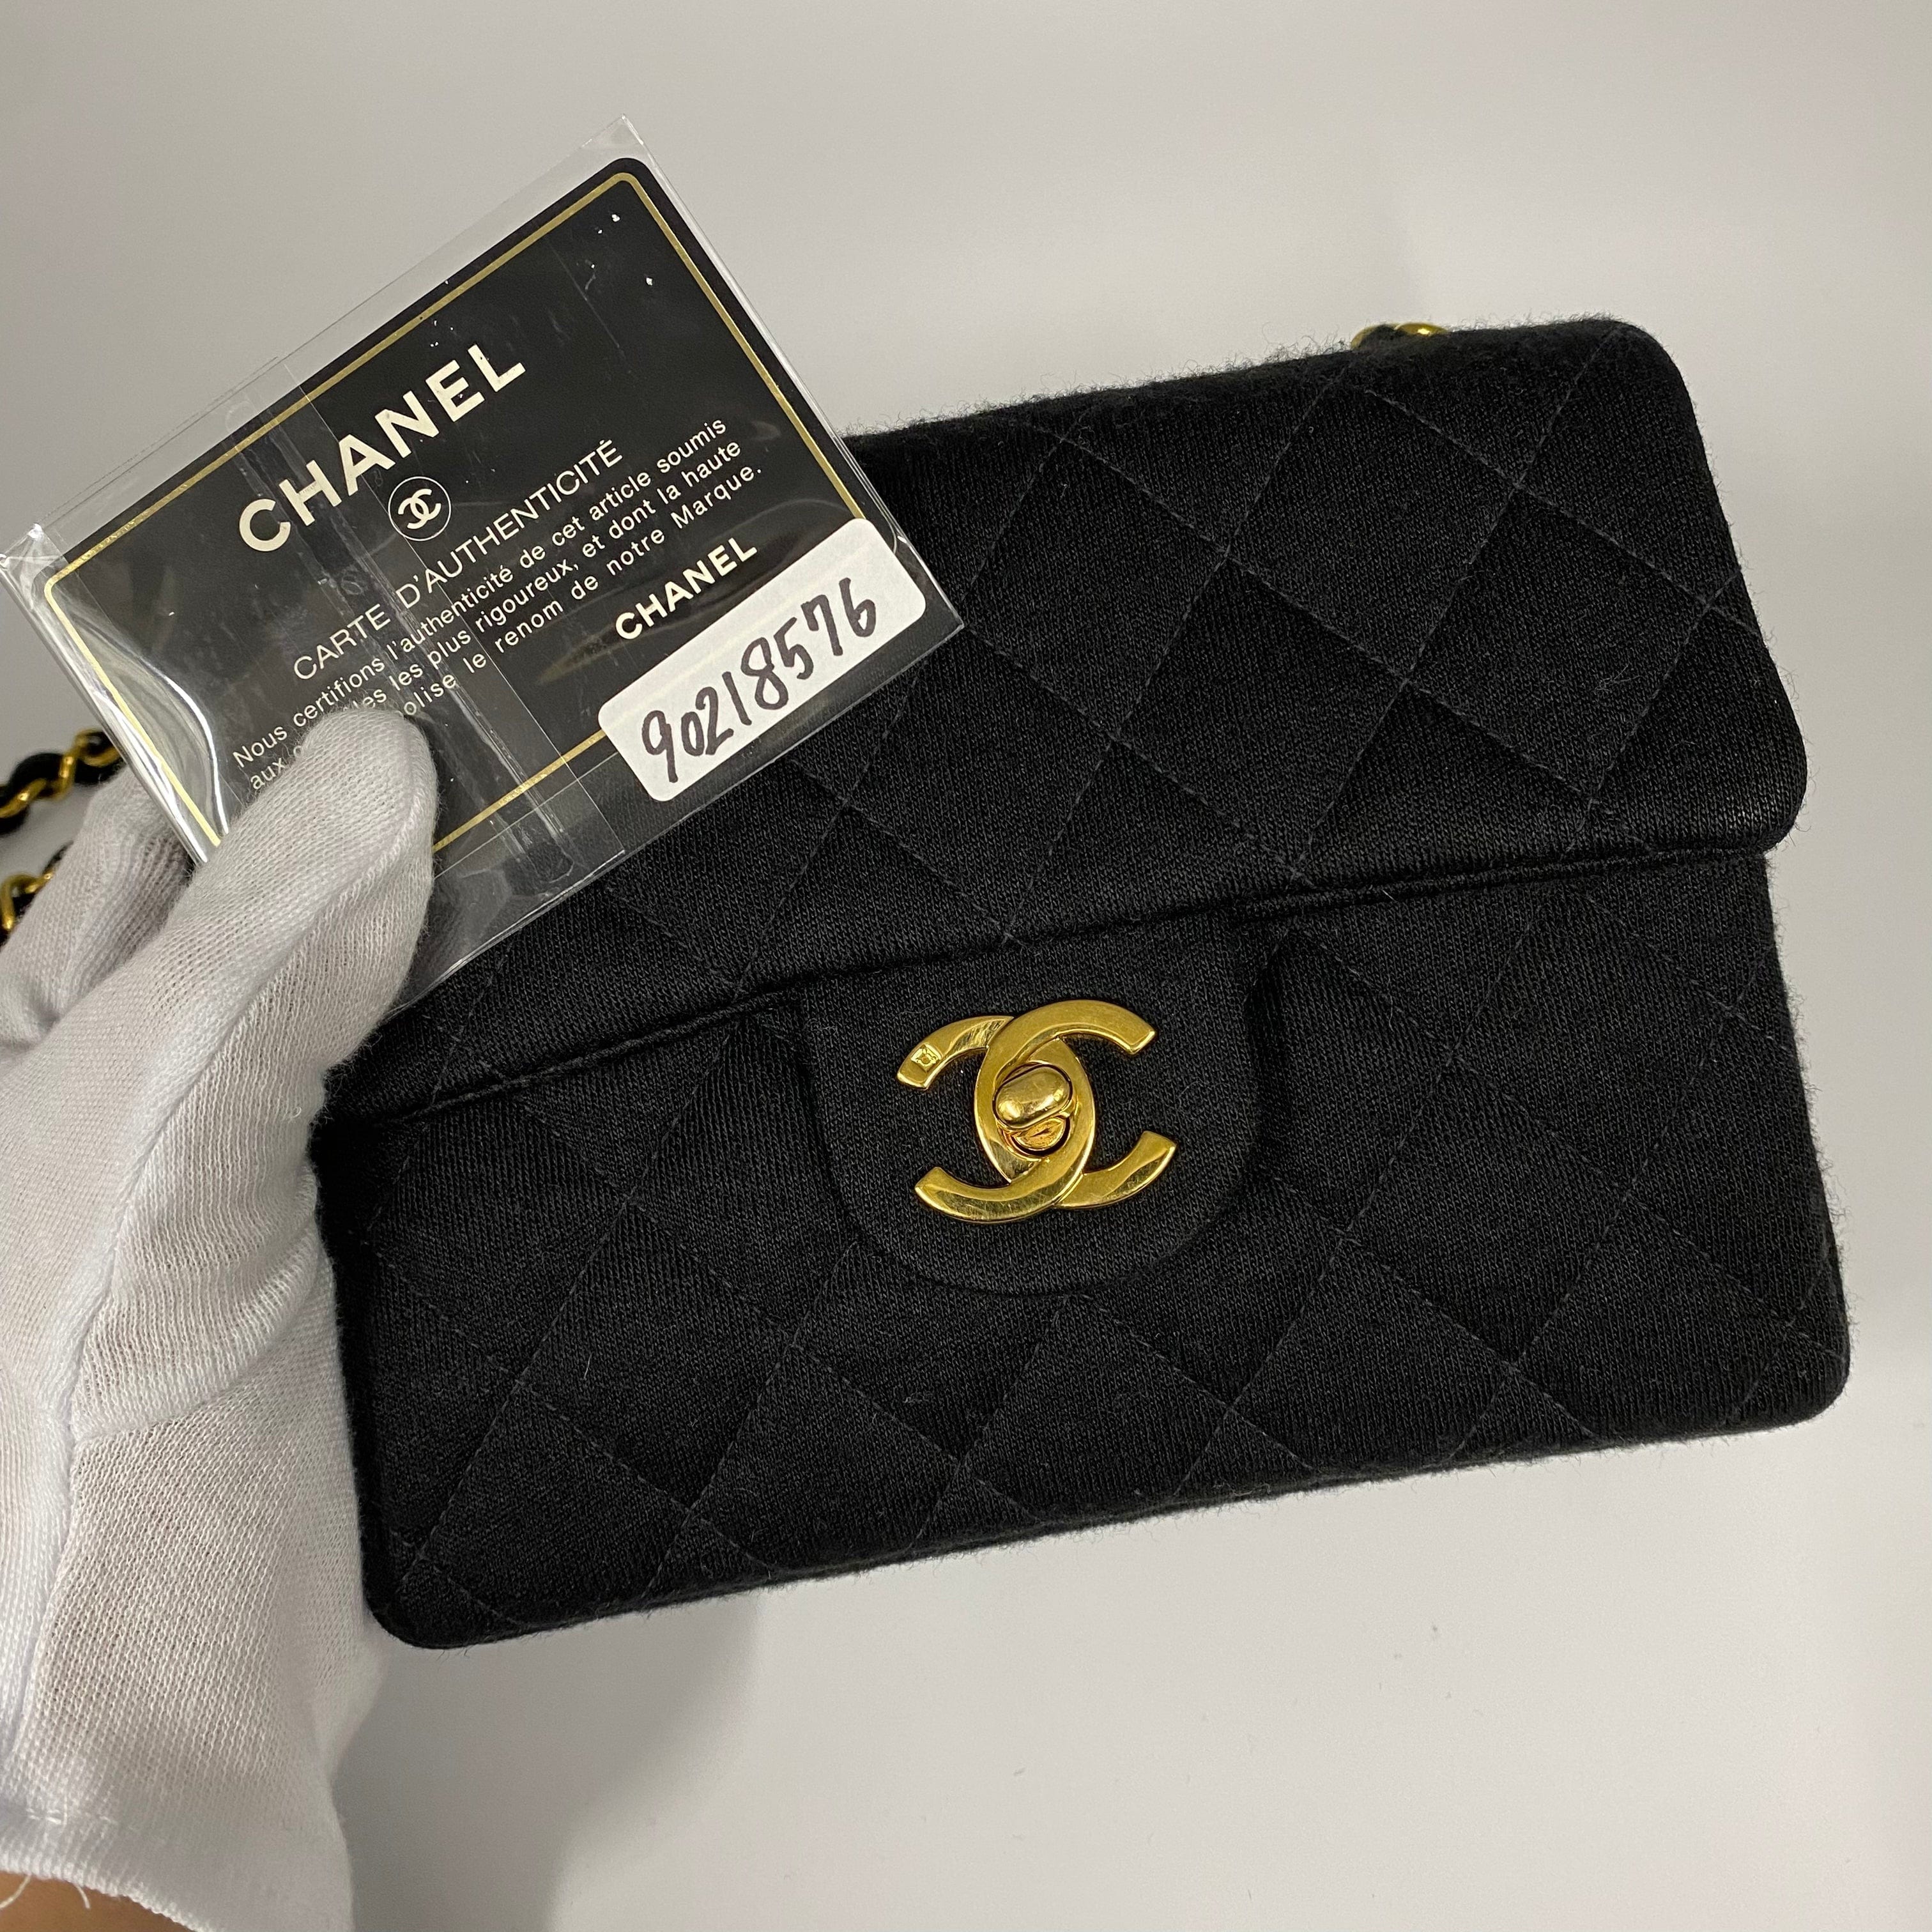 Chanel CHANEL VINTAGE MINI SQUARE 17 CHAIN SHOULDER BAG BLACK COTTON 90218576